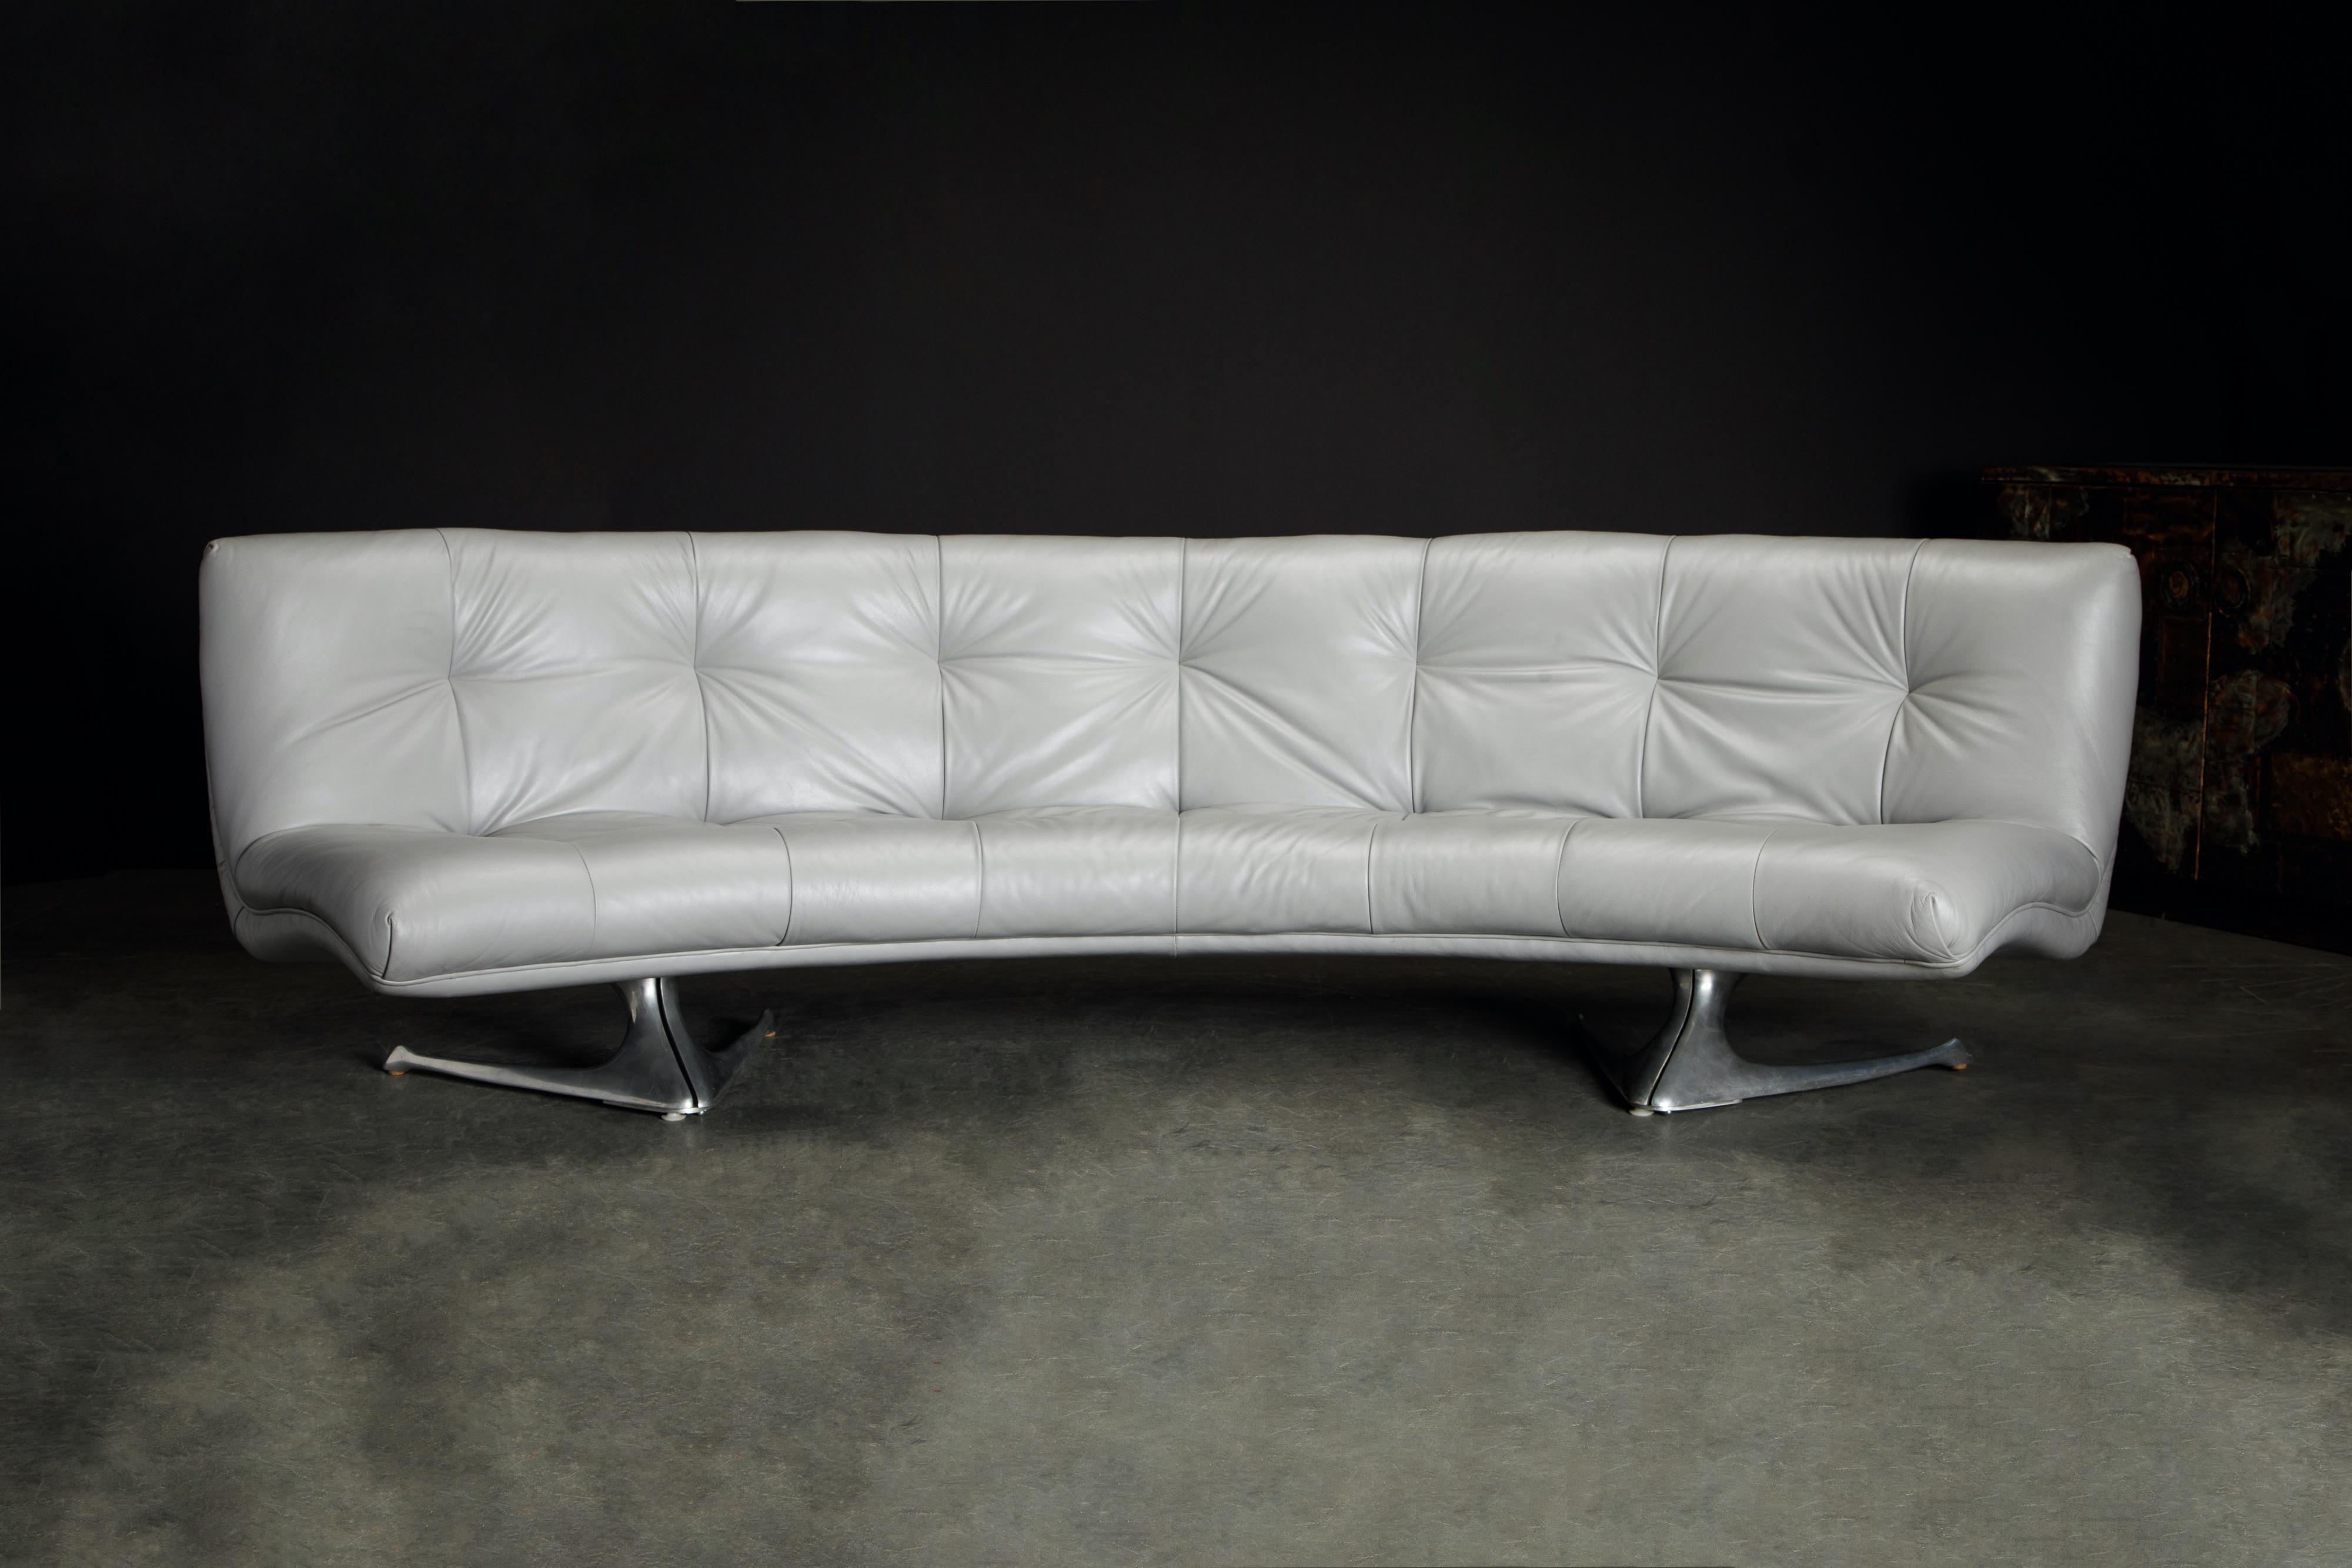 Dieses extrem seltene und sehr gesuchte Sammlerstück von Vladimir Kagan ist sein geschwungenes Sofa Modell #U-522 'Unicorn' von Vladimir Kagan Designs Inc., das um 1963 entworfen und hergestellt wurde, kurz nachdem sich Kagan von Hugo Dreyfuss von